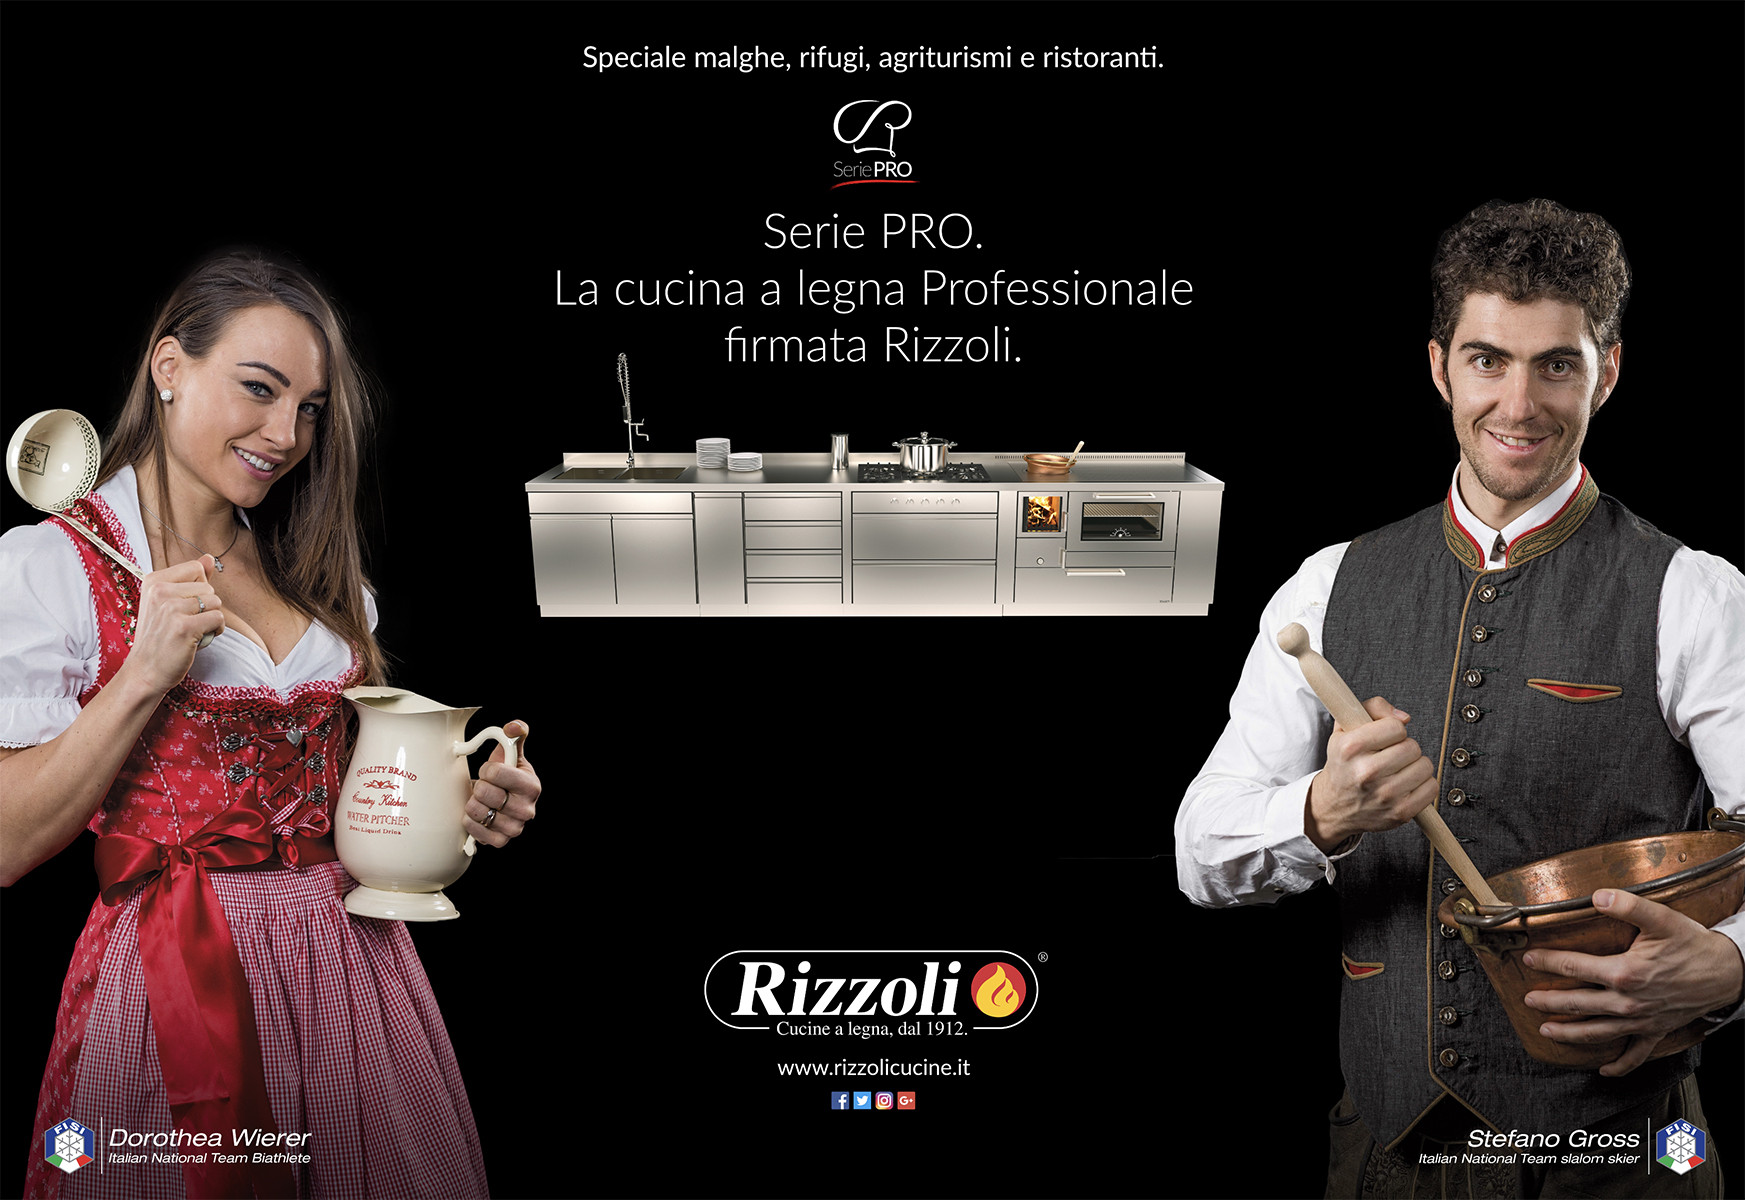 Press | Rizzoli cucine